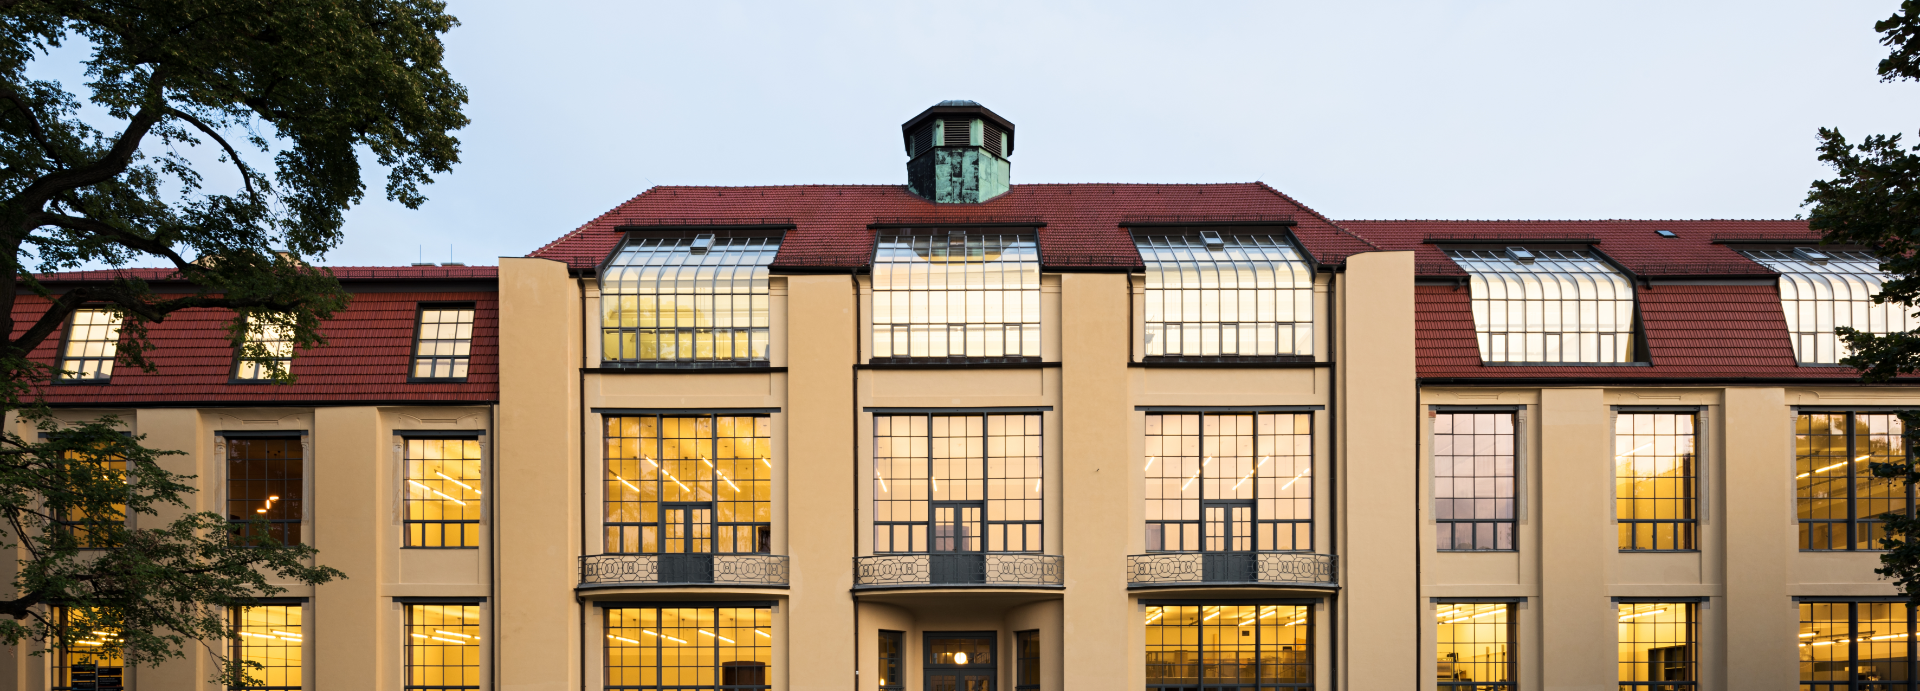 Hauptgebäude der Bauhaus-Universität Weimar, Fotograf: Tobias Adam